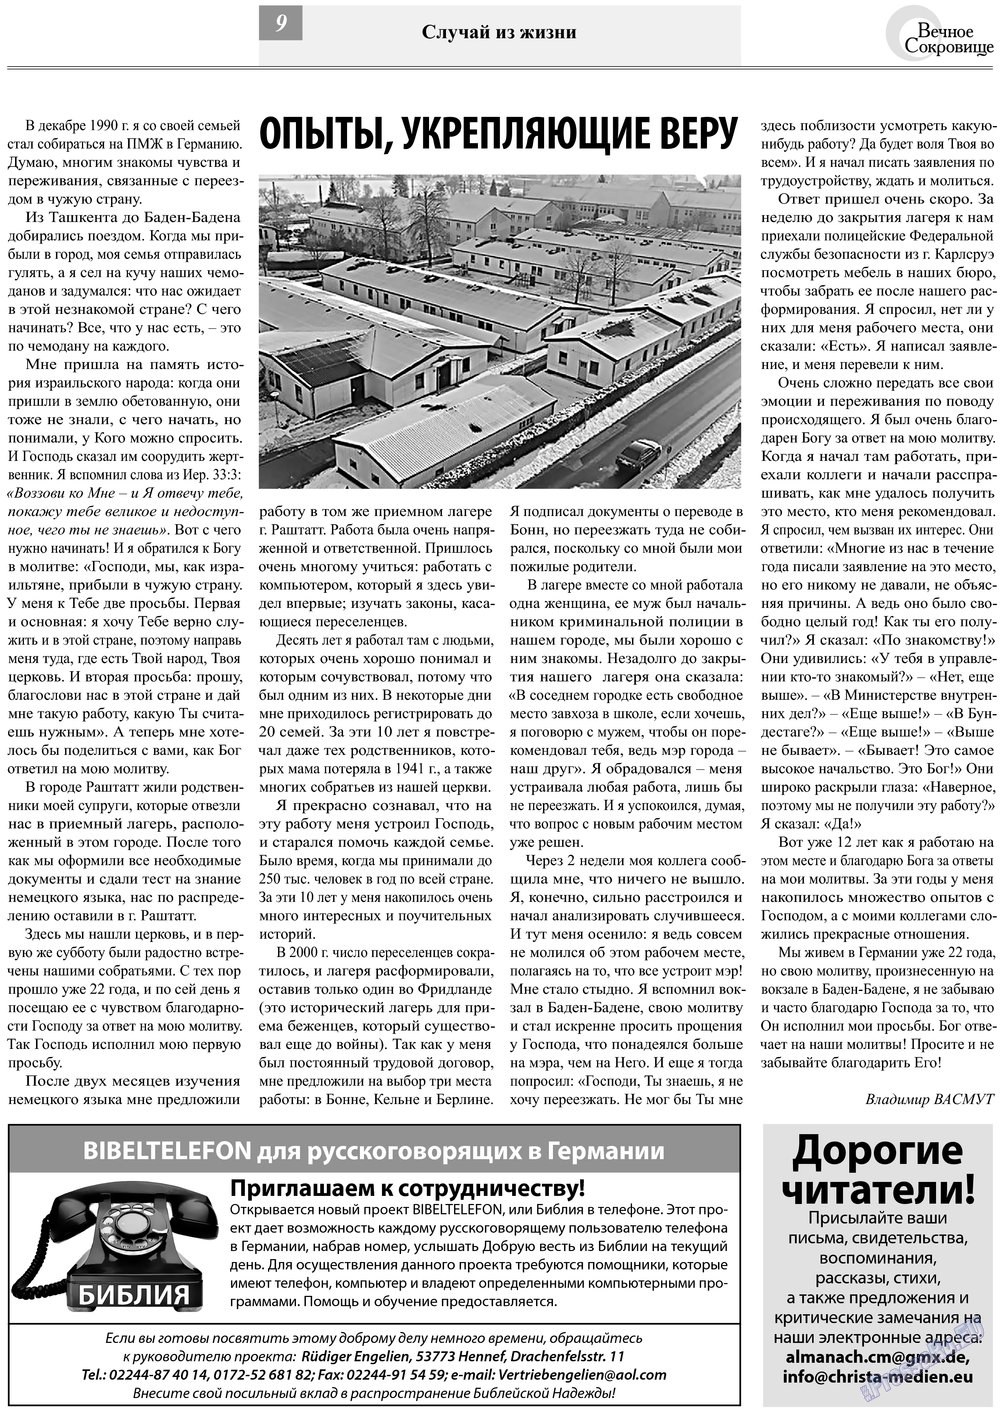 Вечное сокровище (газета). 2013 год, номер 2, стр. 9